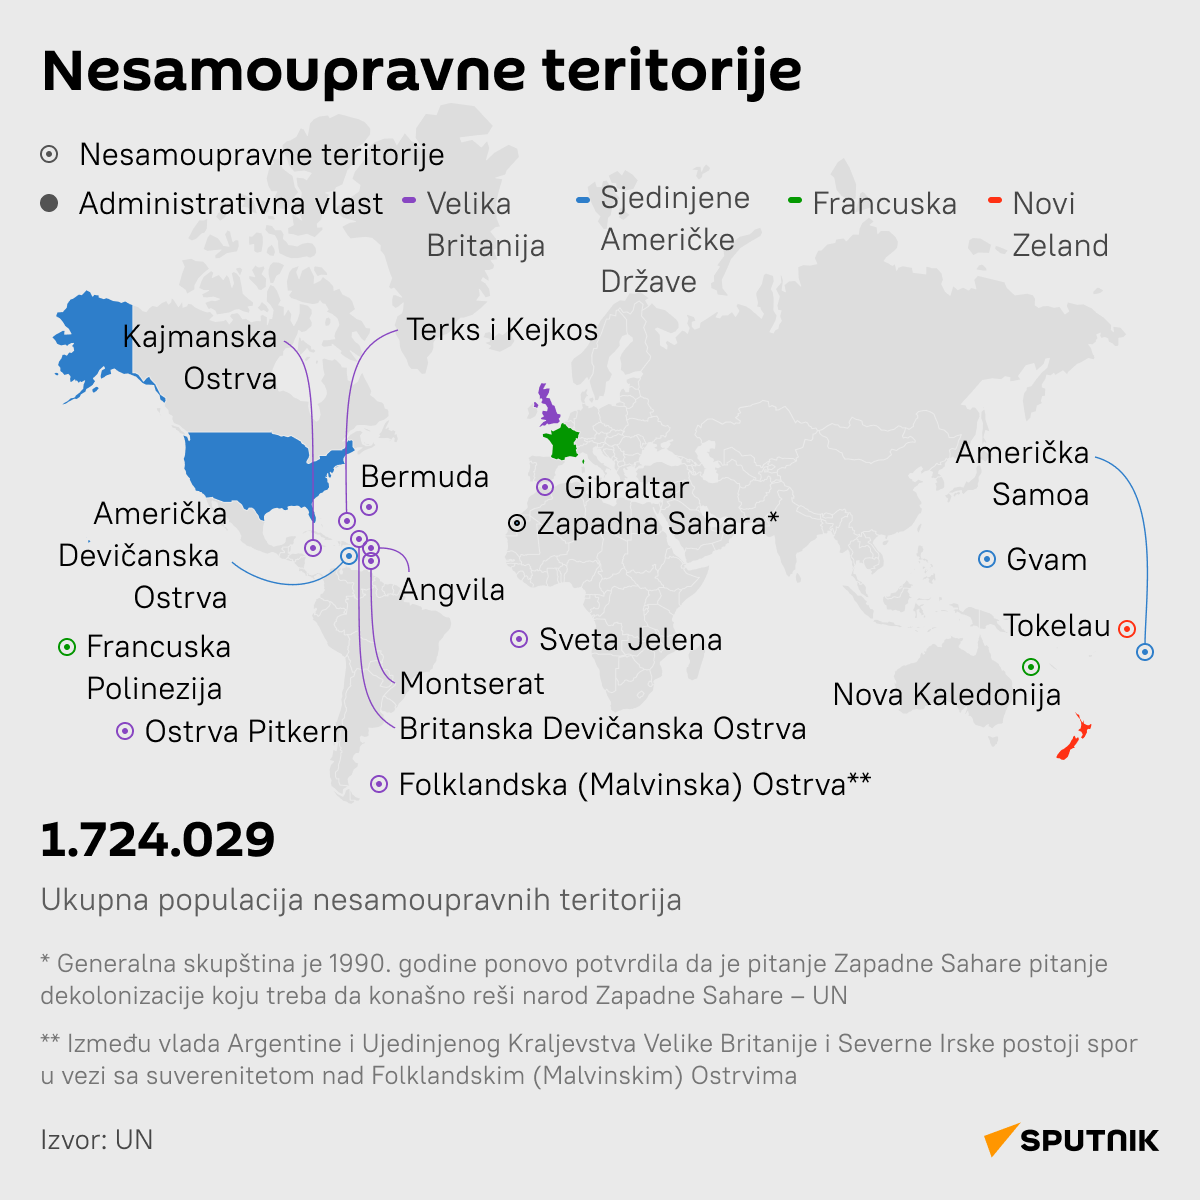 Nesamoupravne teritorije LATINICA desk - Sputnik Srbija